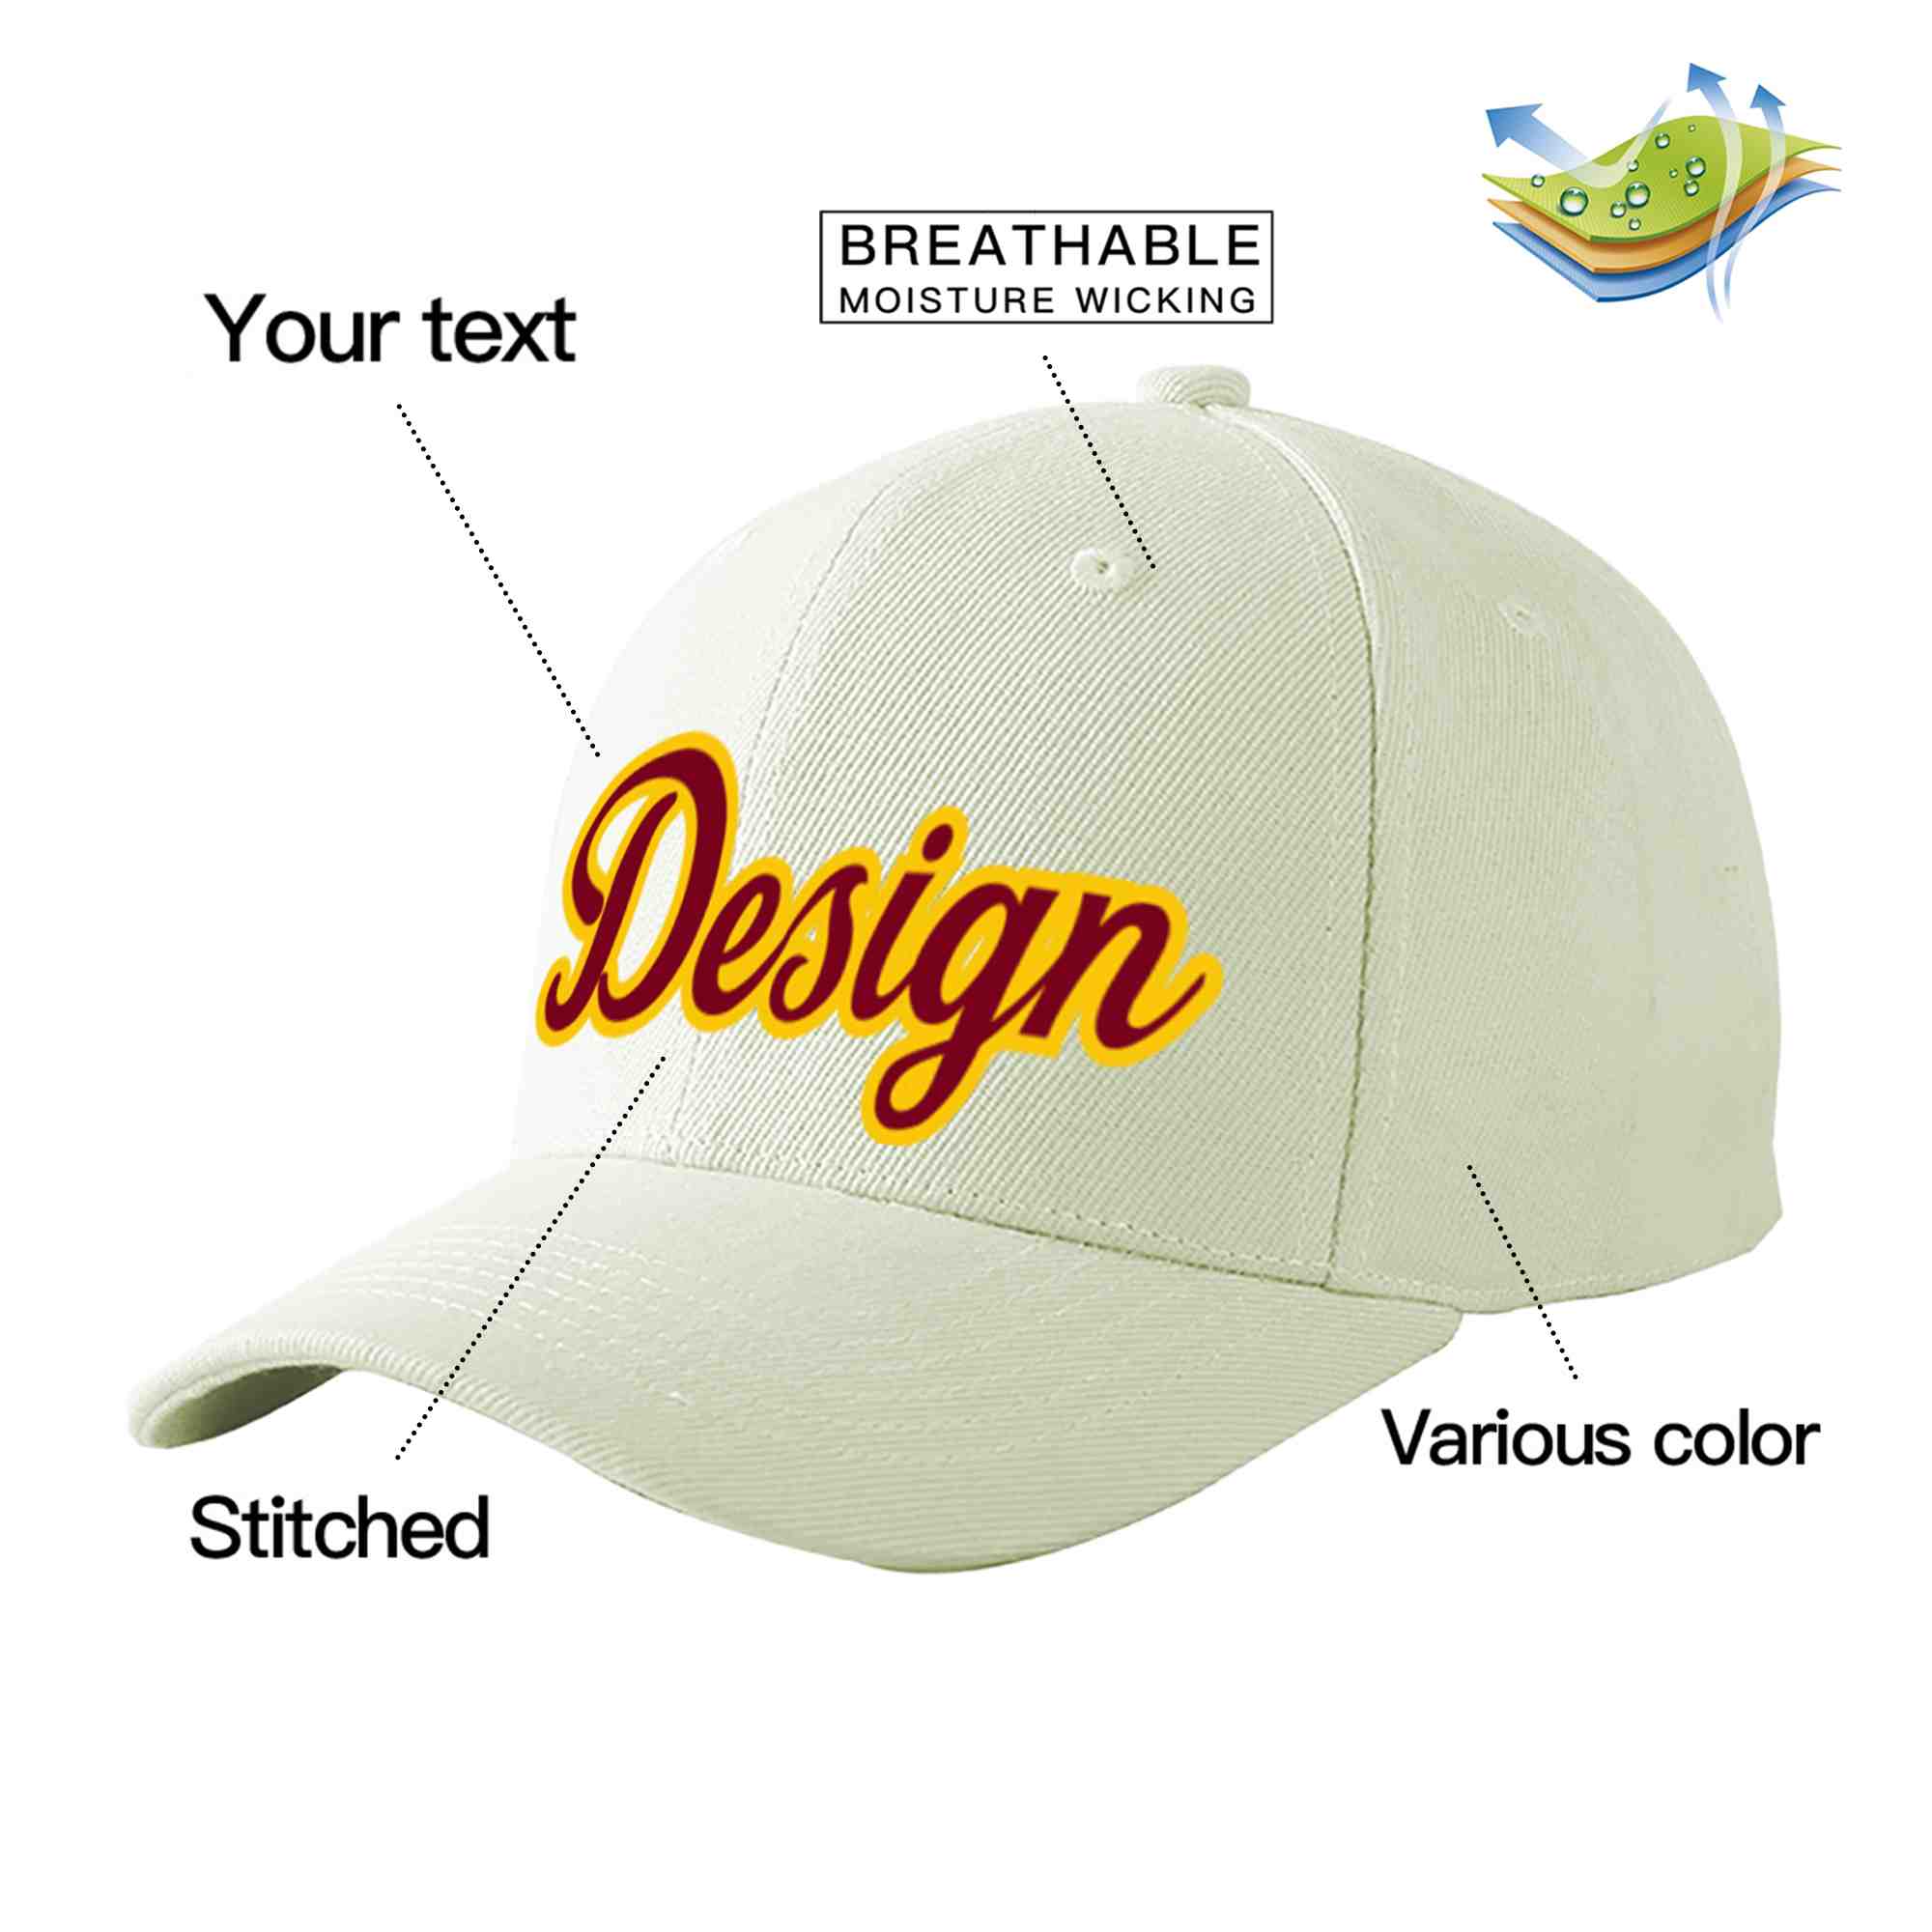 Custom Cream Crimson-Gold Curved Eaves Sport Design Baseball Cap